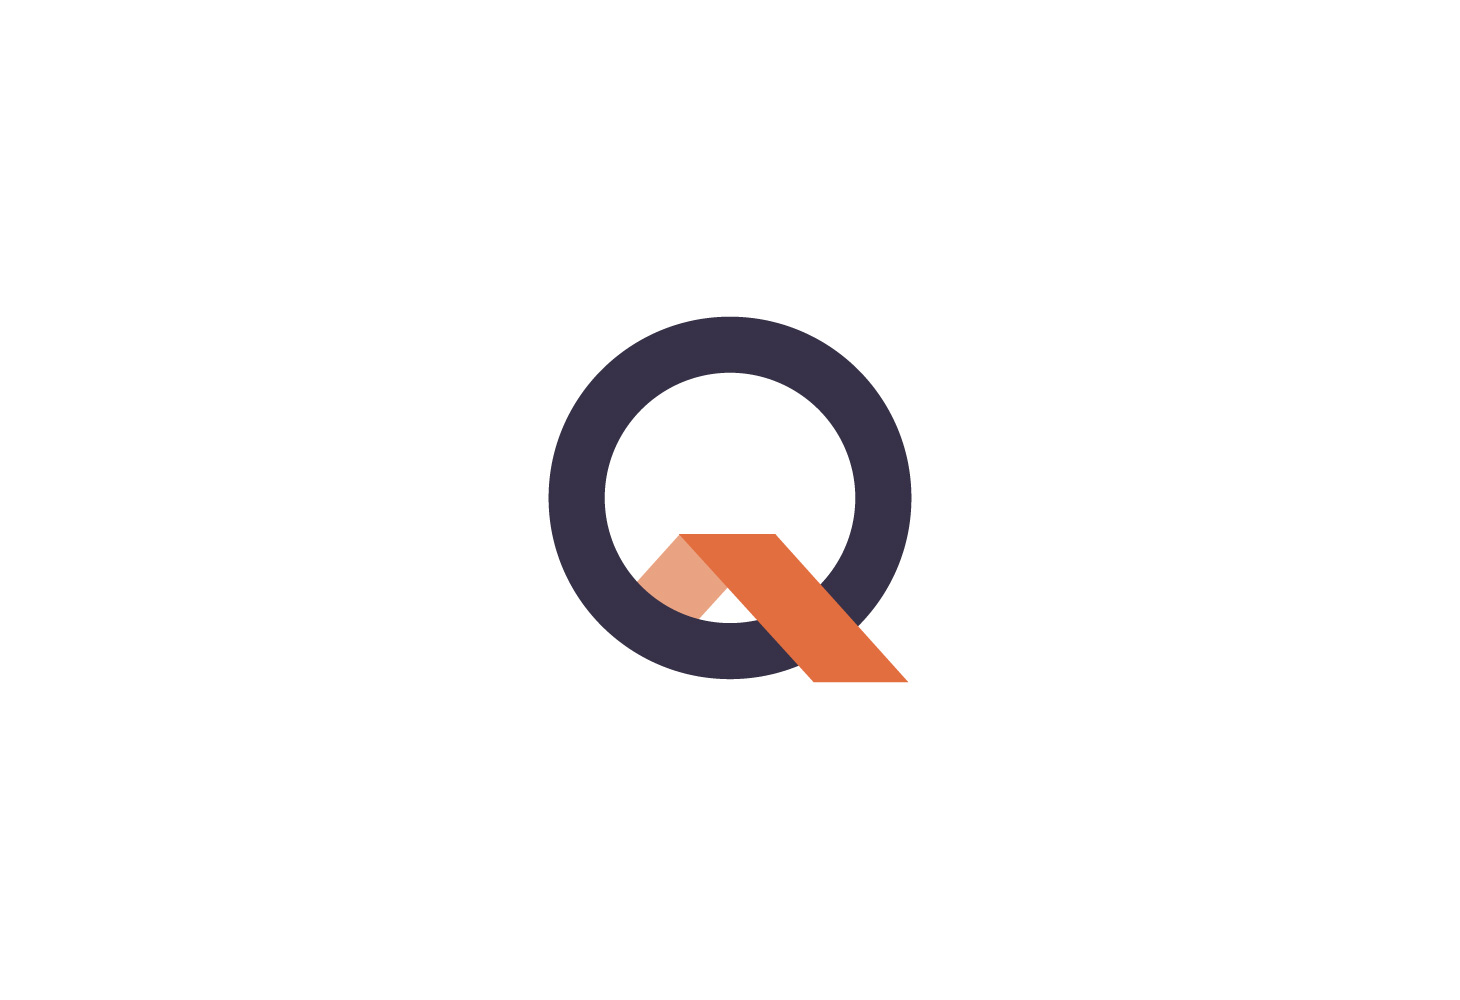 Quanta - Branding - the Q